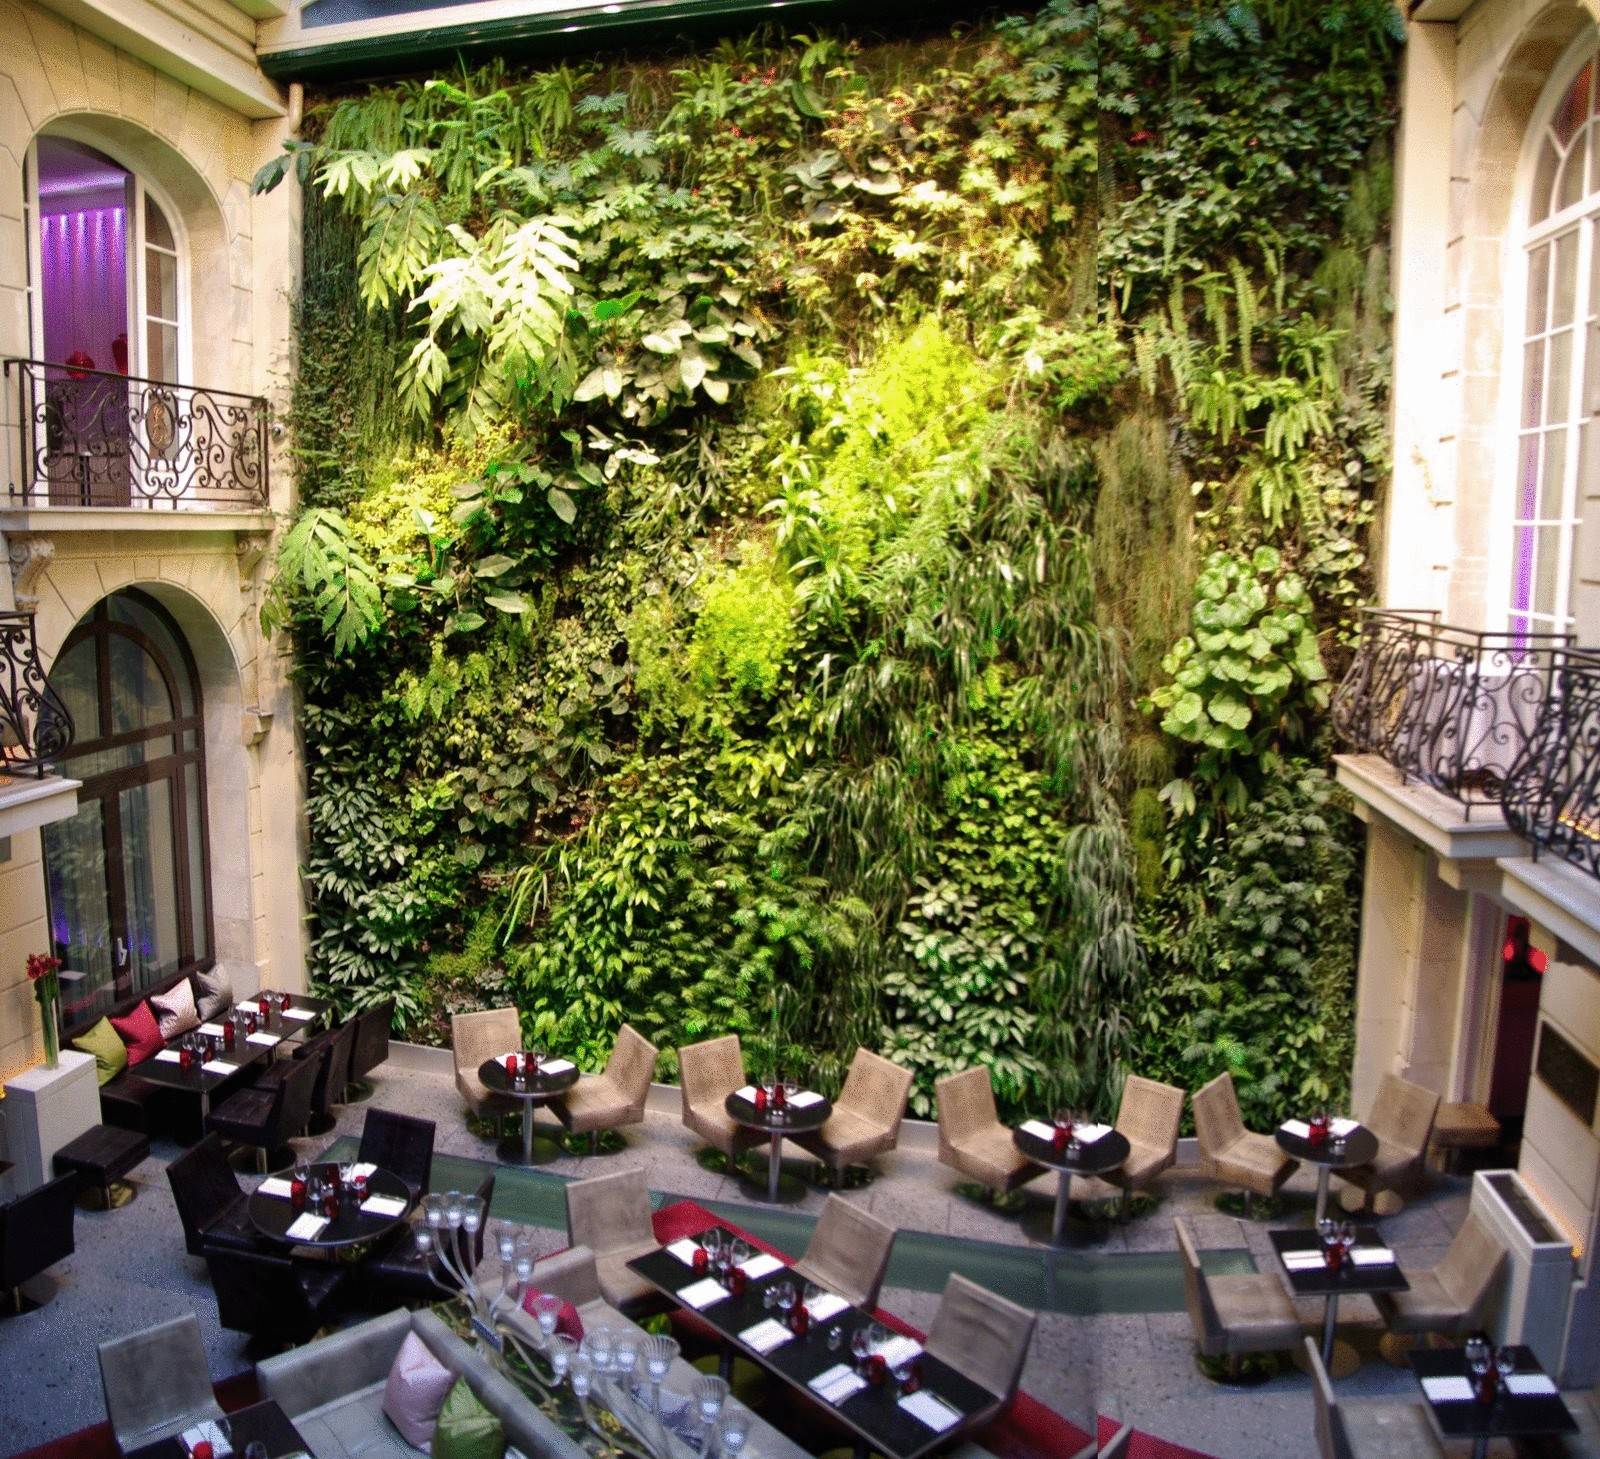 Необычный экспонат недели дизайна в париже: вертикальный сад «оазис абукир» от патрика блана |